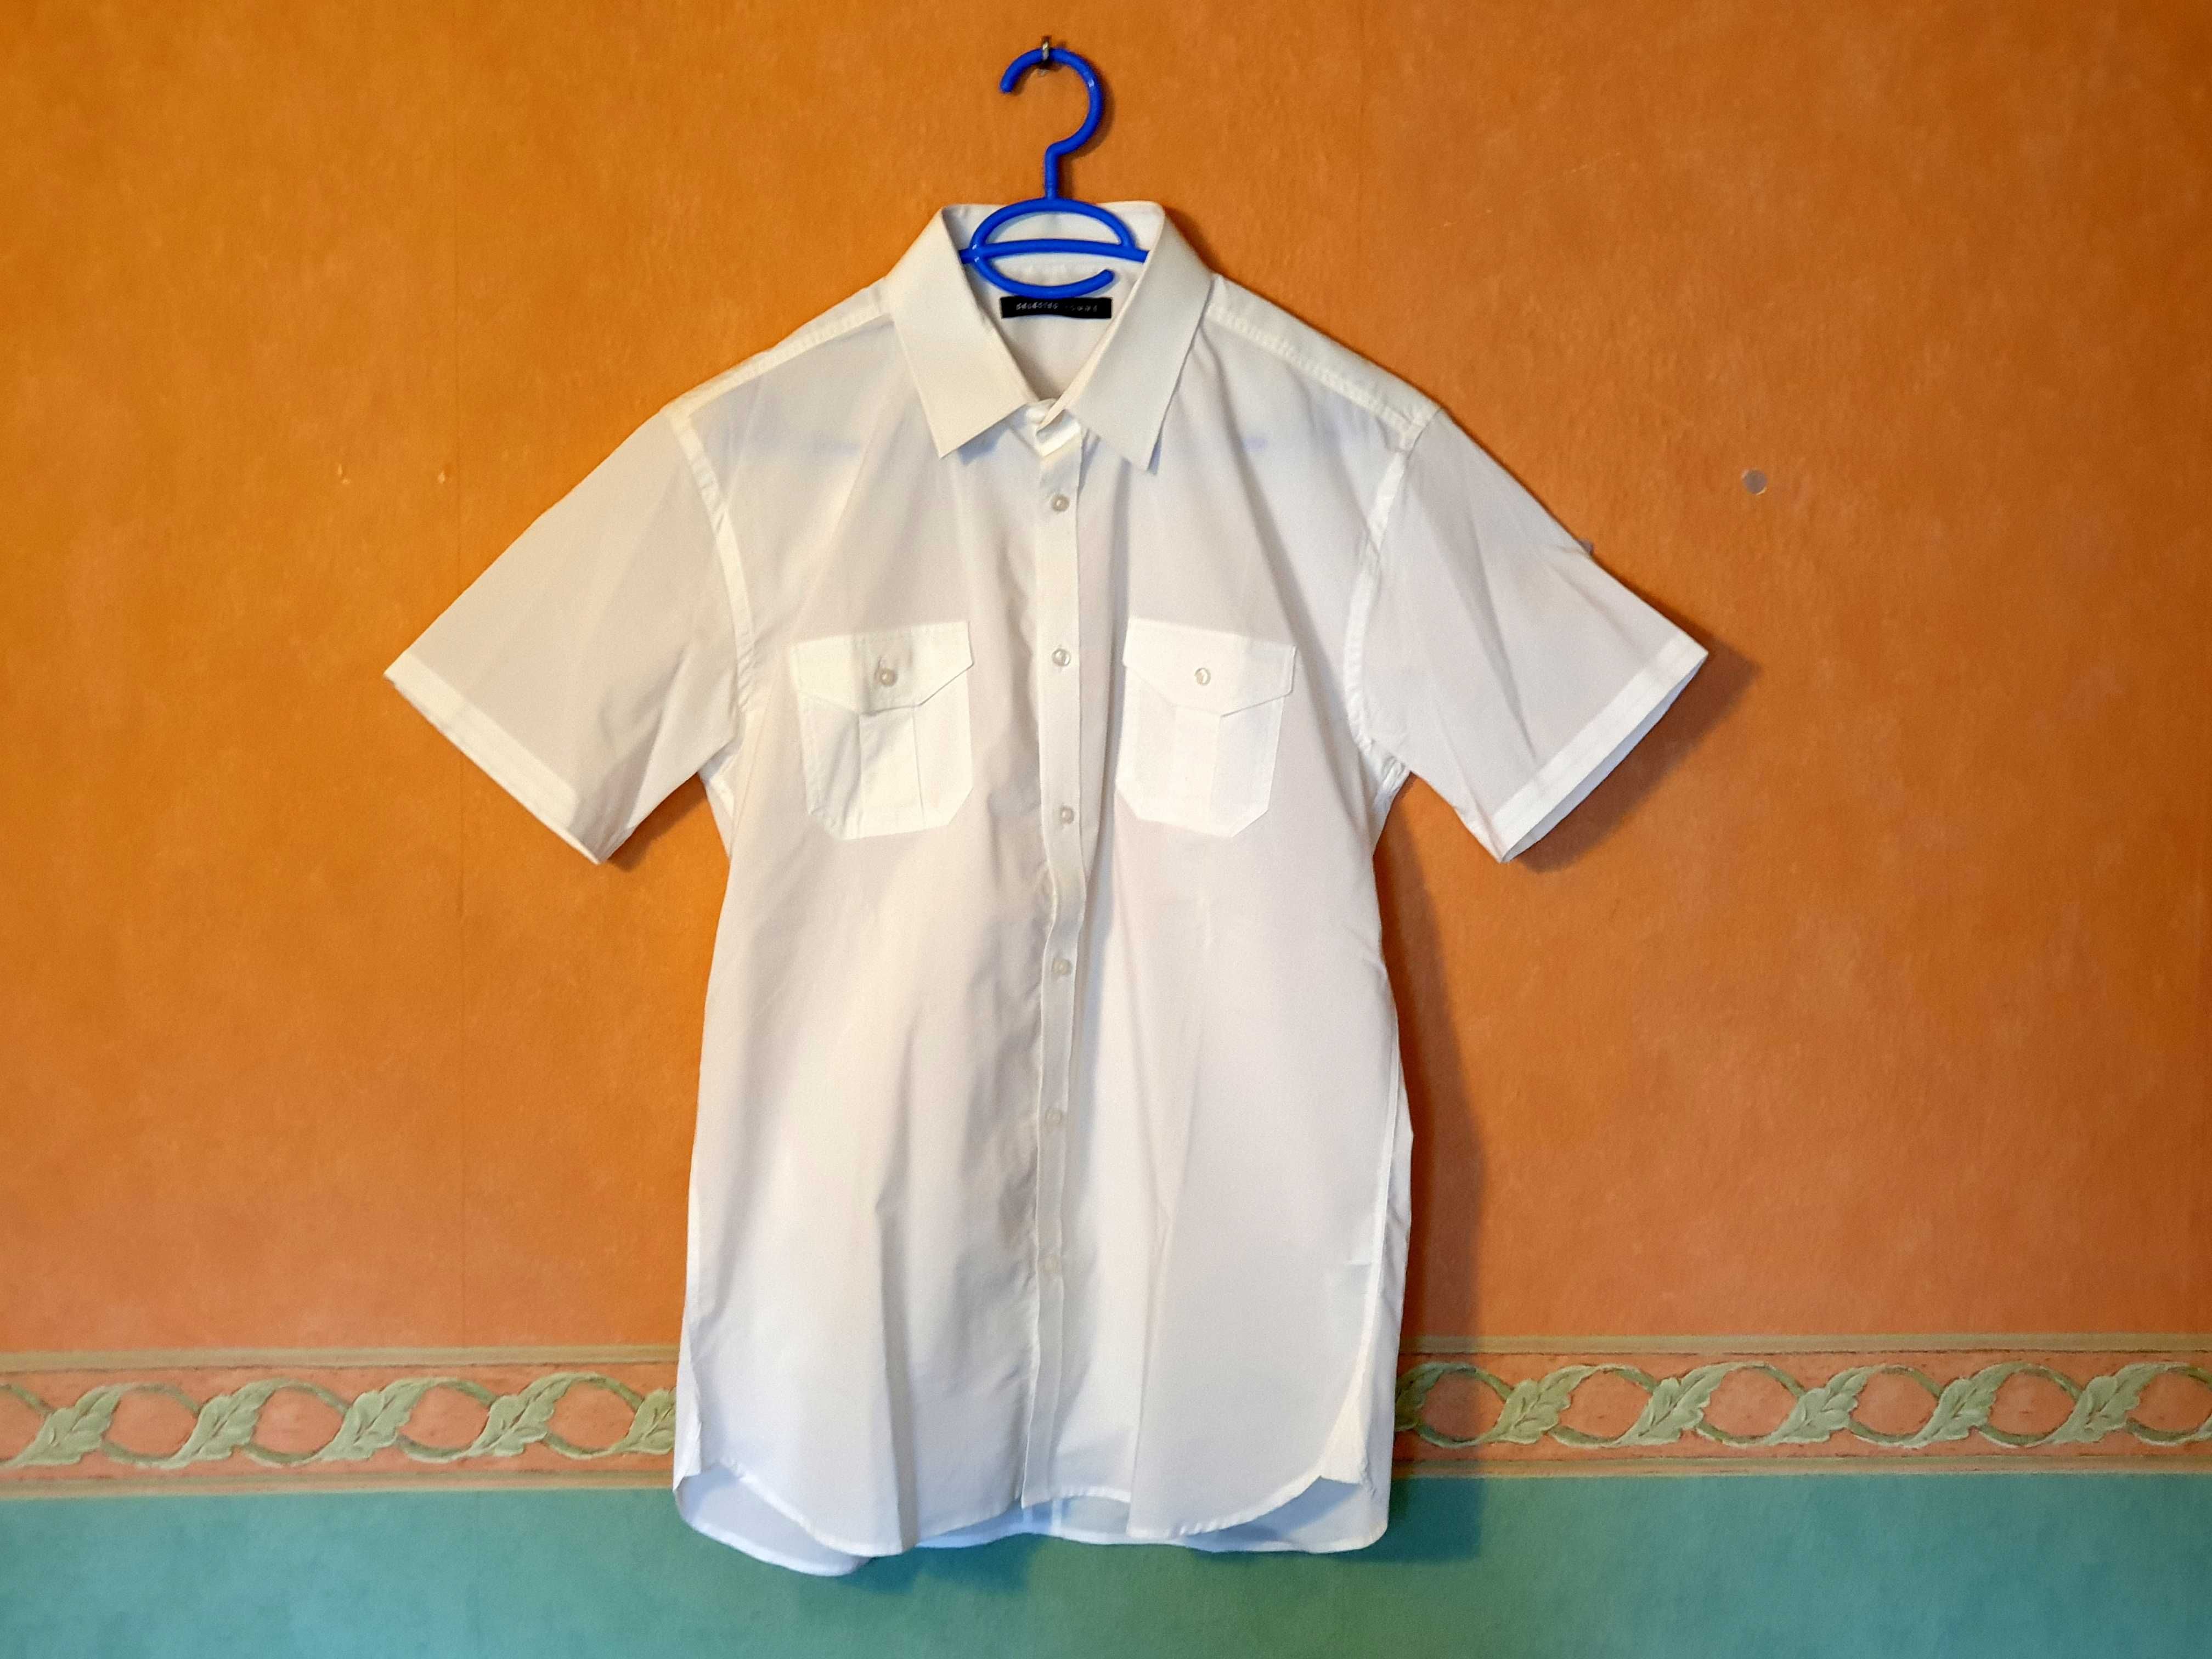 Koszula męska - krótki rękaw - Selected - homme - size L - 42